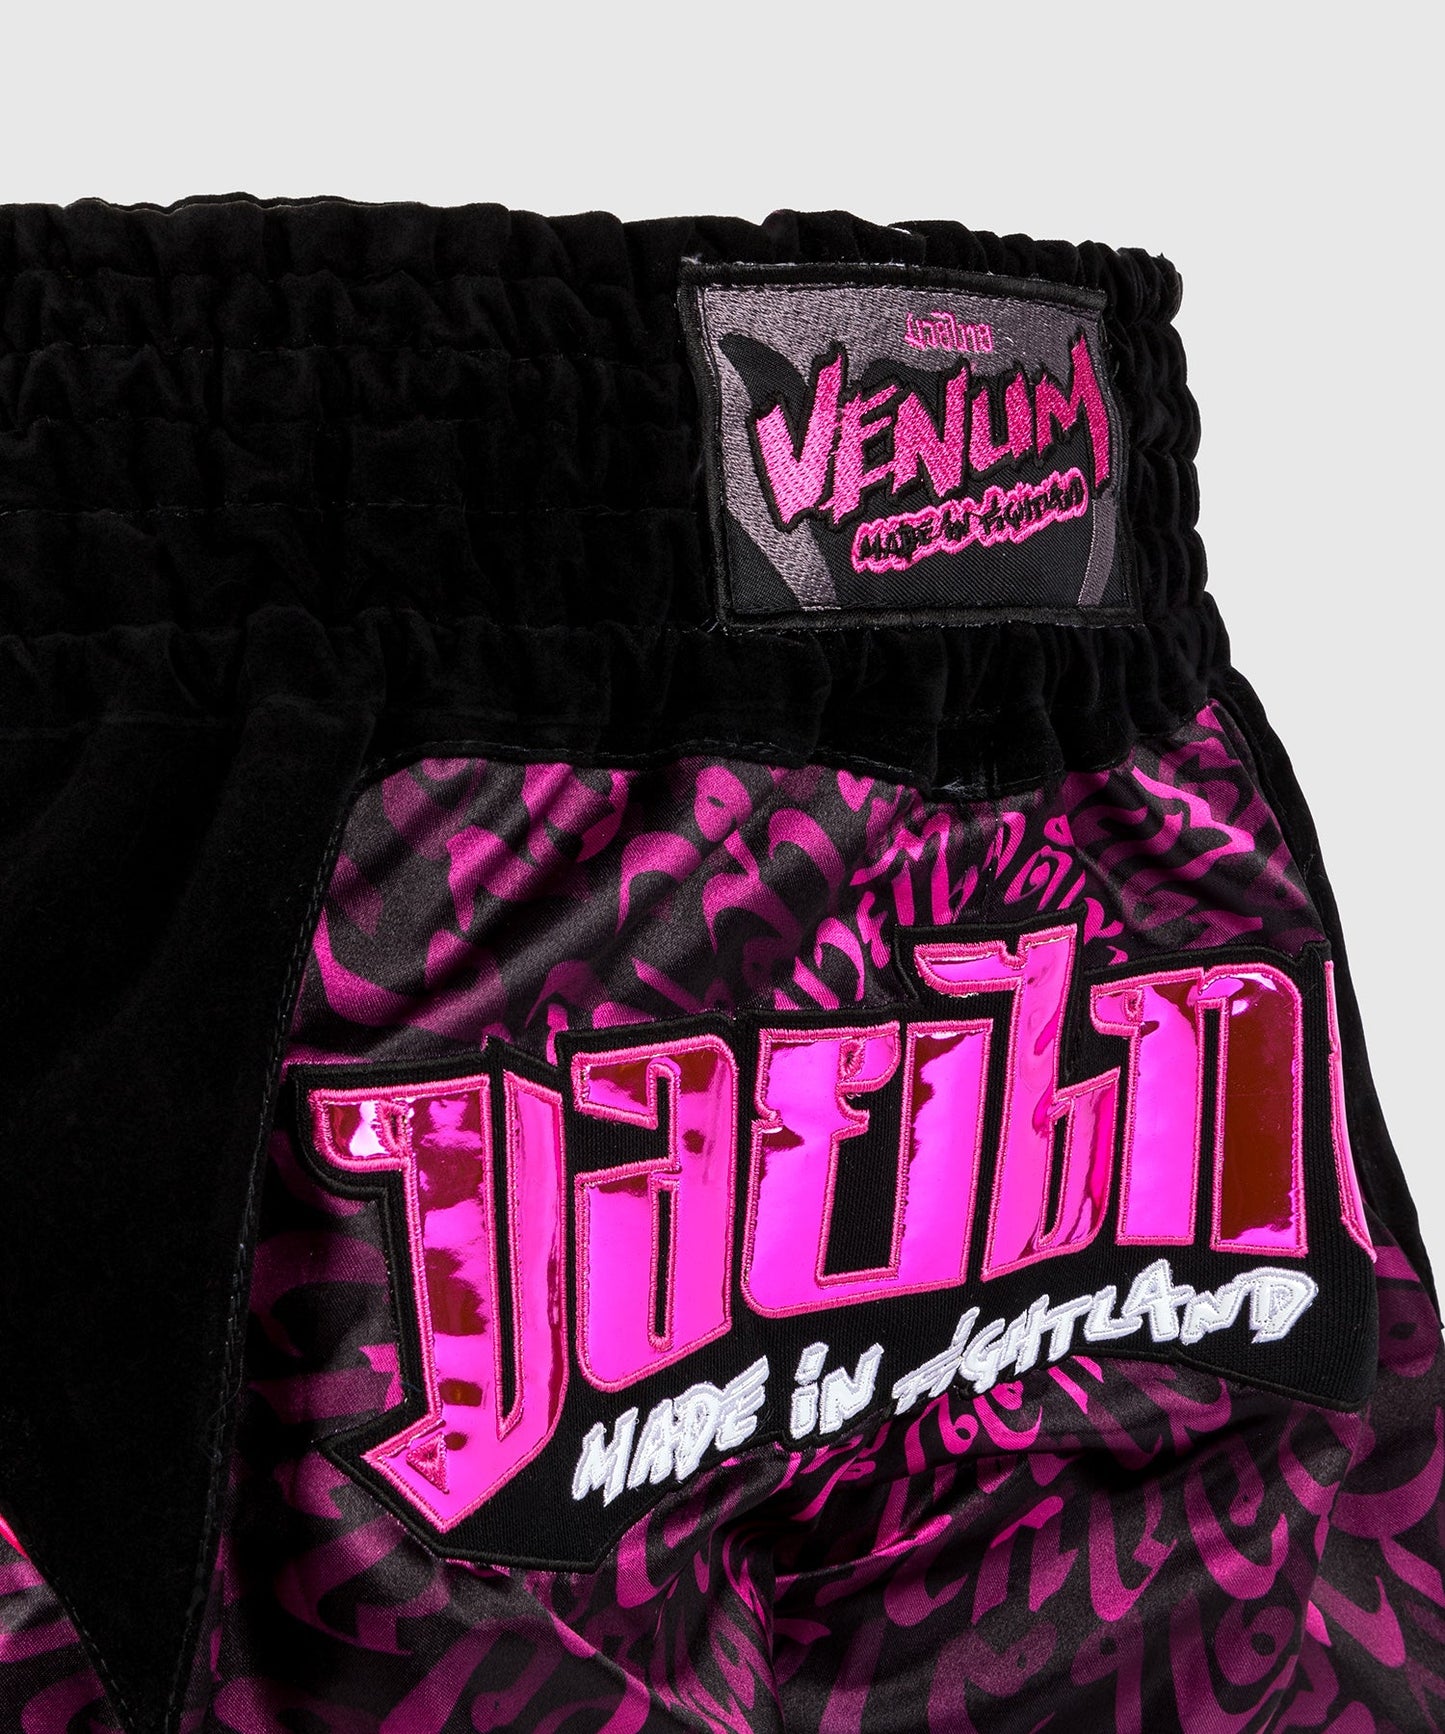 Venum Attack Muay Thai Shorts - Schwarz/Pink